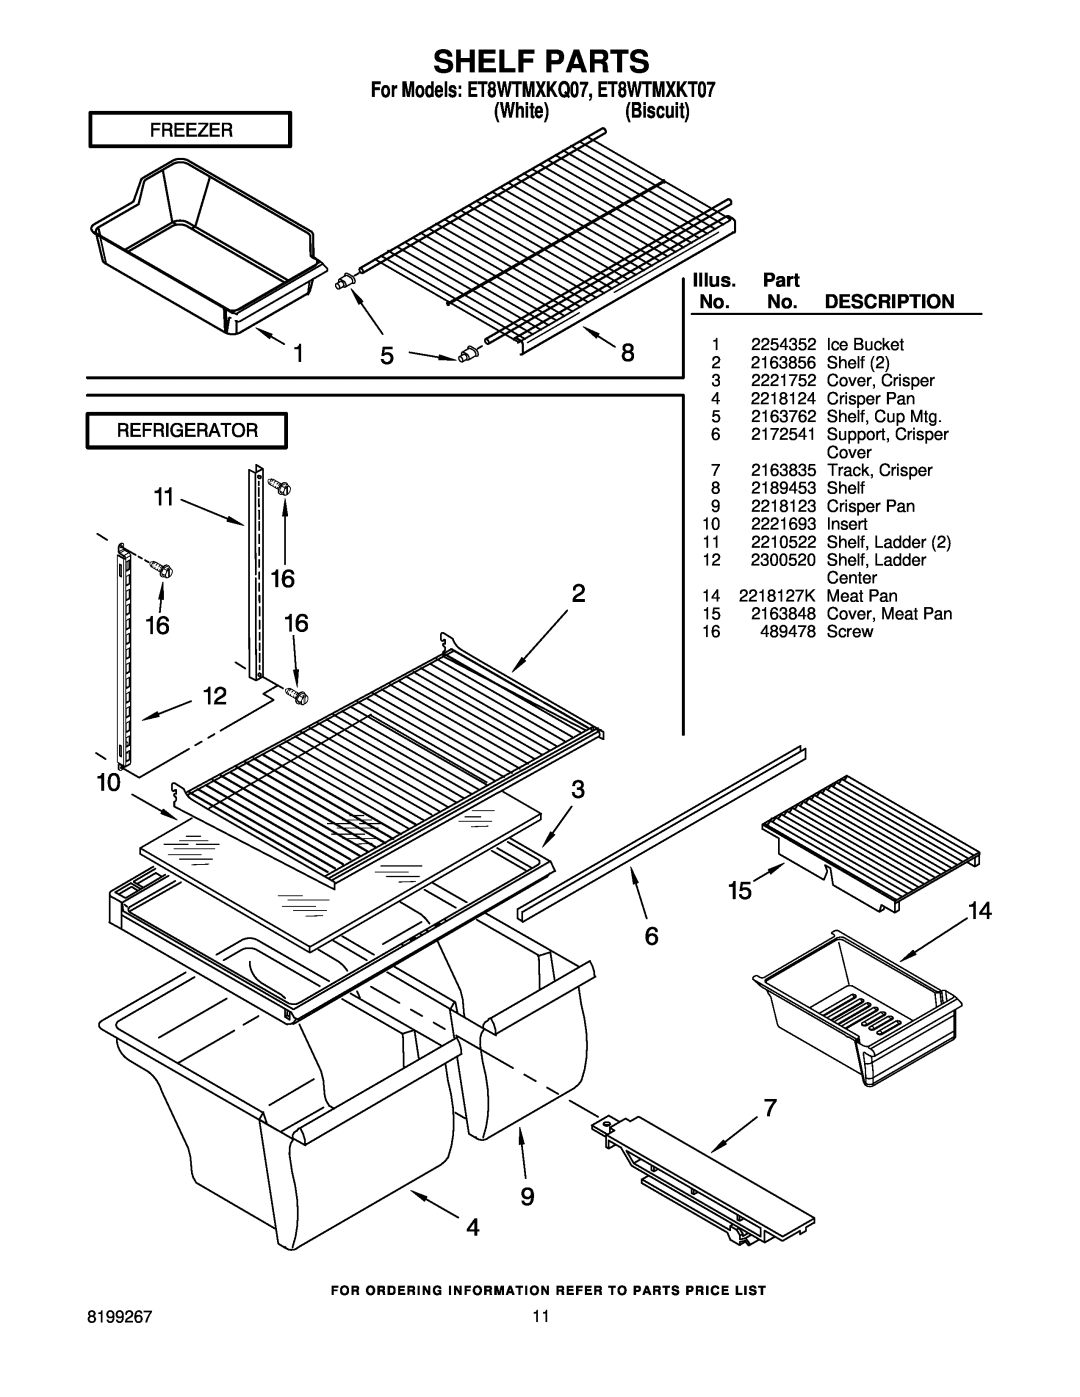 Whirlpool manual Shelf Parts, For Models ET8WTMXKQ07, ET8WTMXKT07, White Biscuit, Illus, Description 